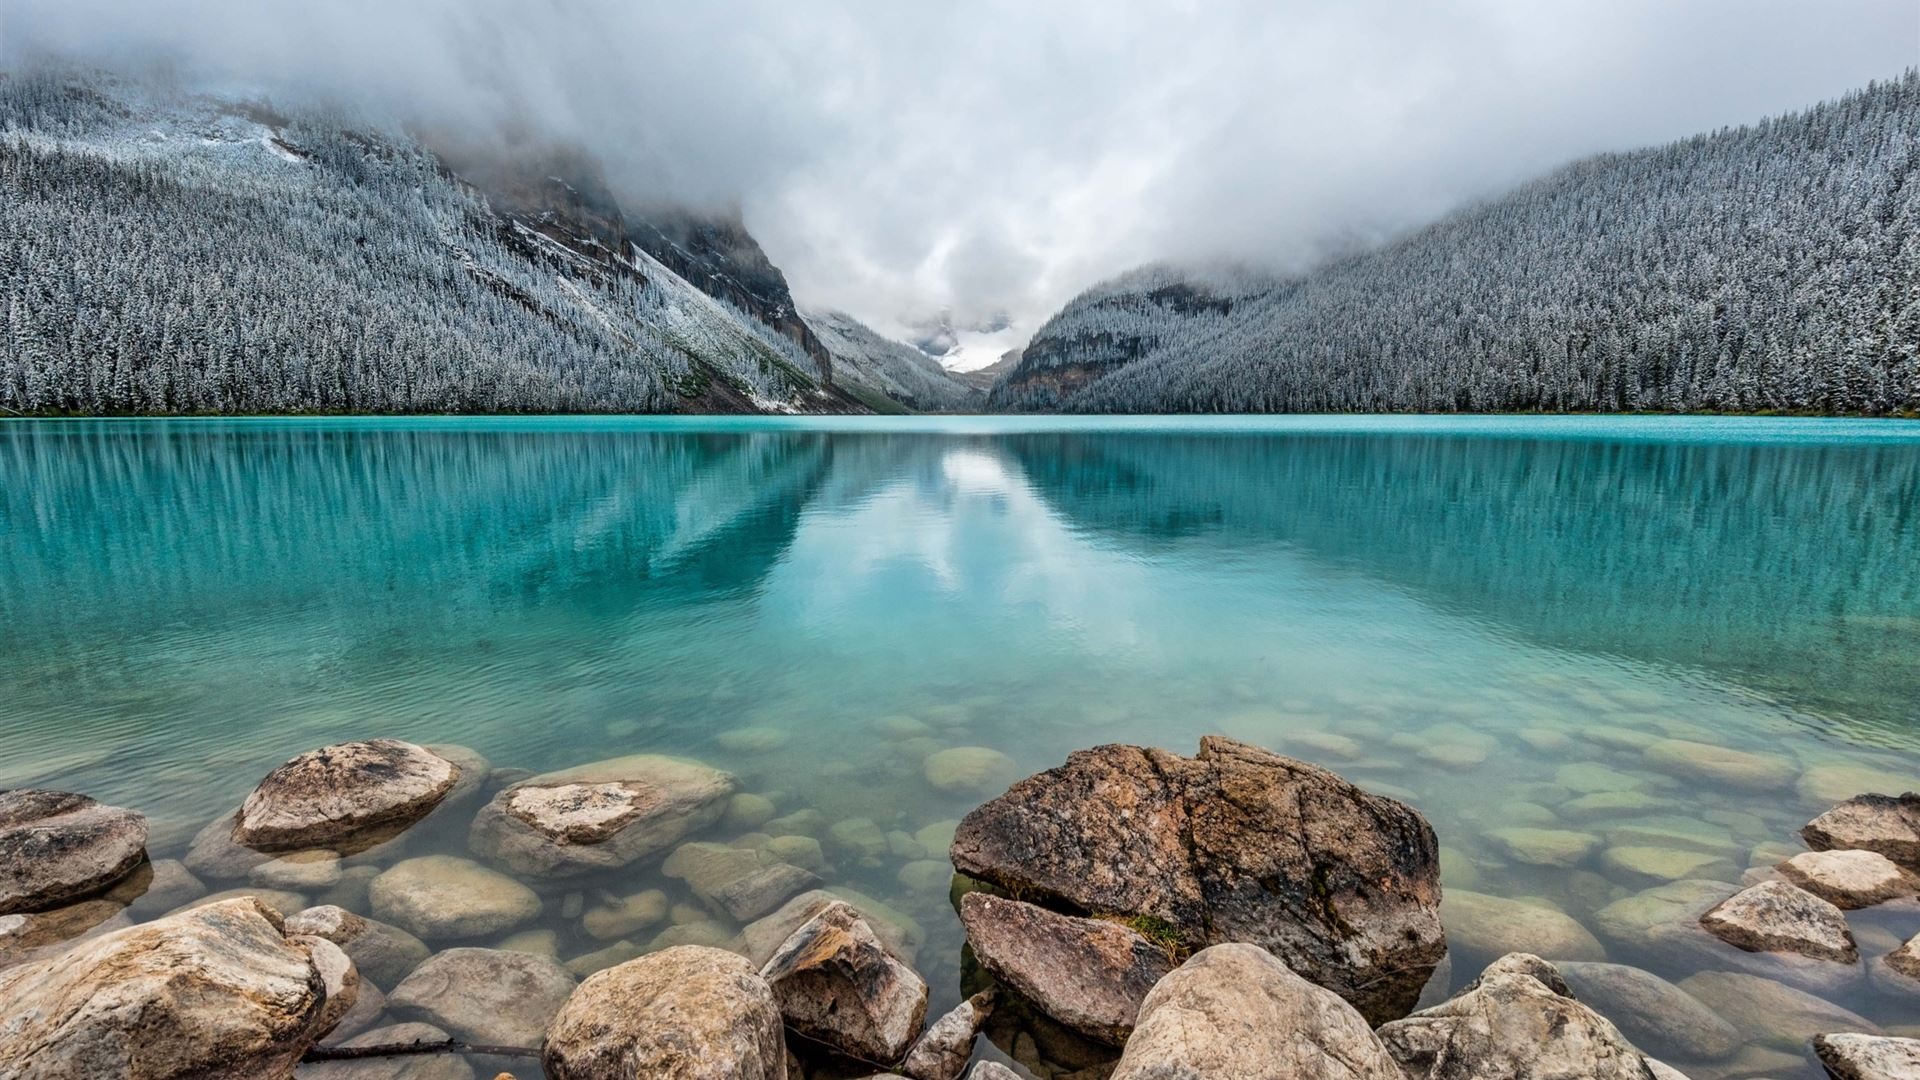 Banff National Park, Mac wallpaper, Nature's beauty, Desktop background, 1920x1080 Full HD Desktop